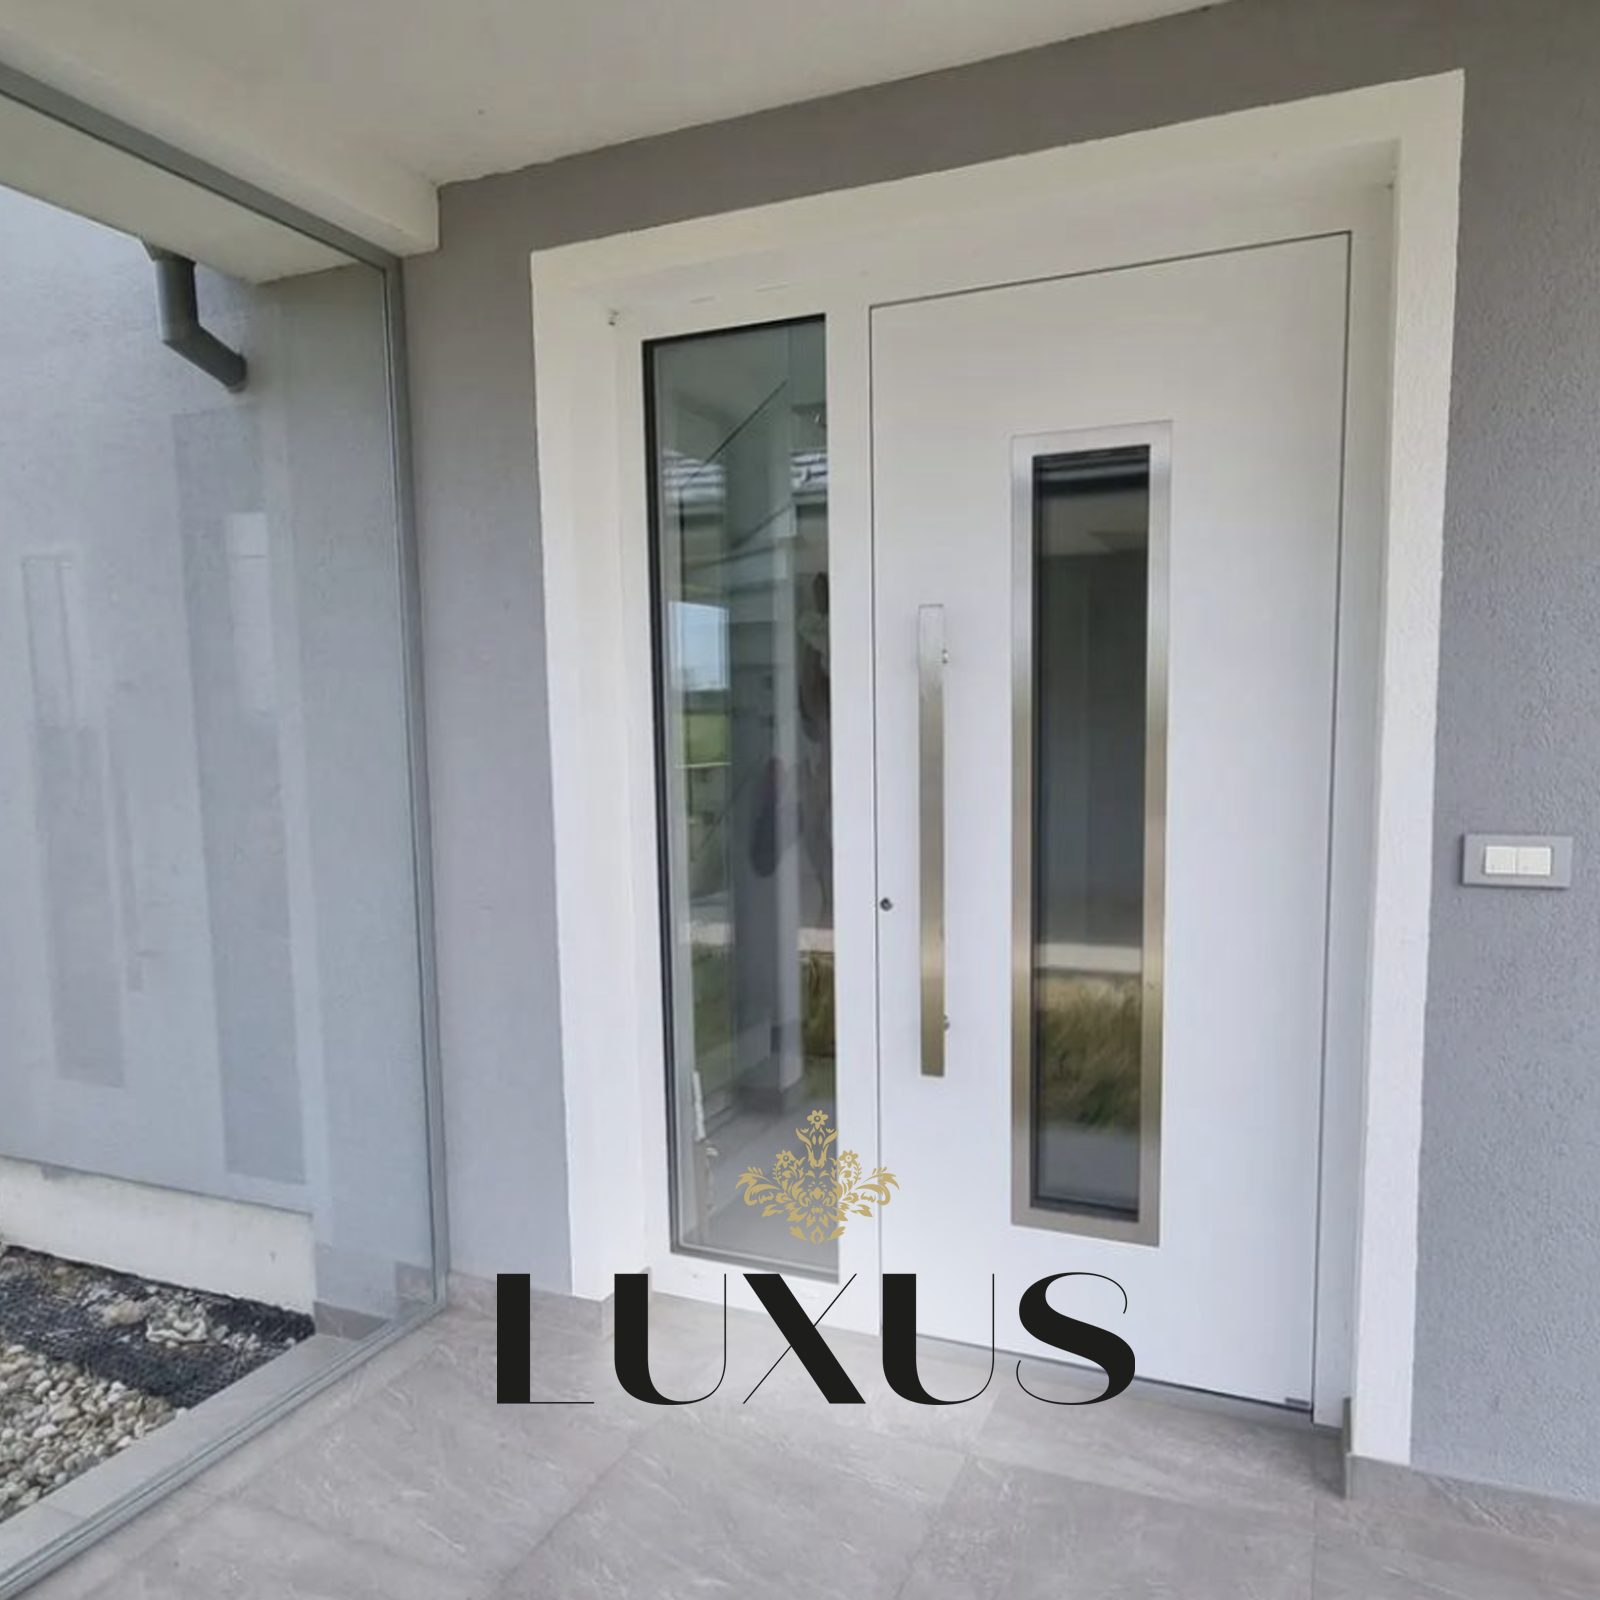 Luxus Doors Front Door Huddersfield - Image of a modern aluminium front door with a sleek design and side panels.